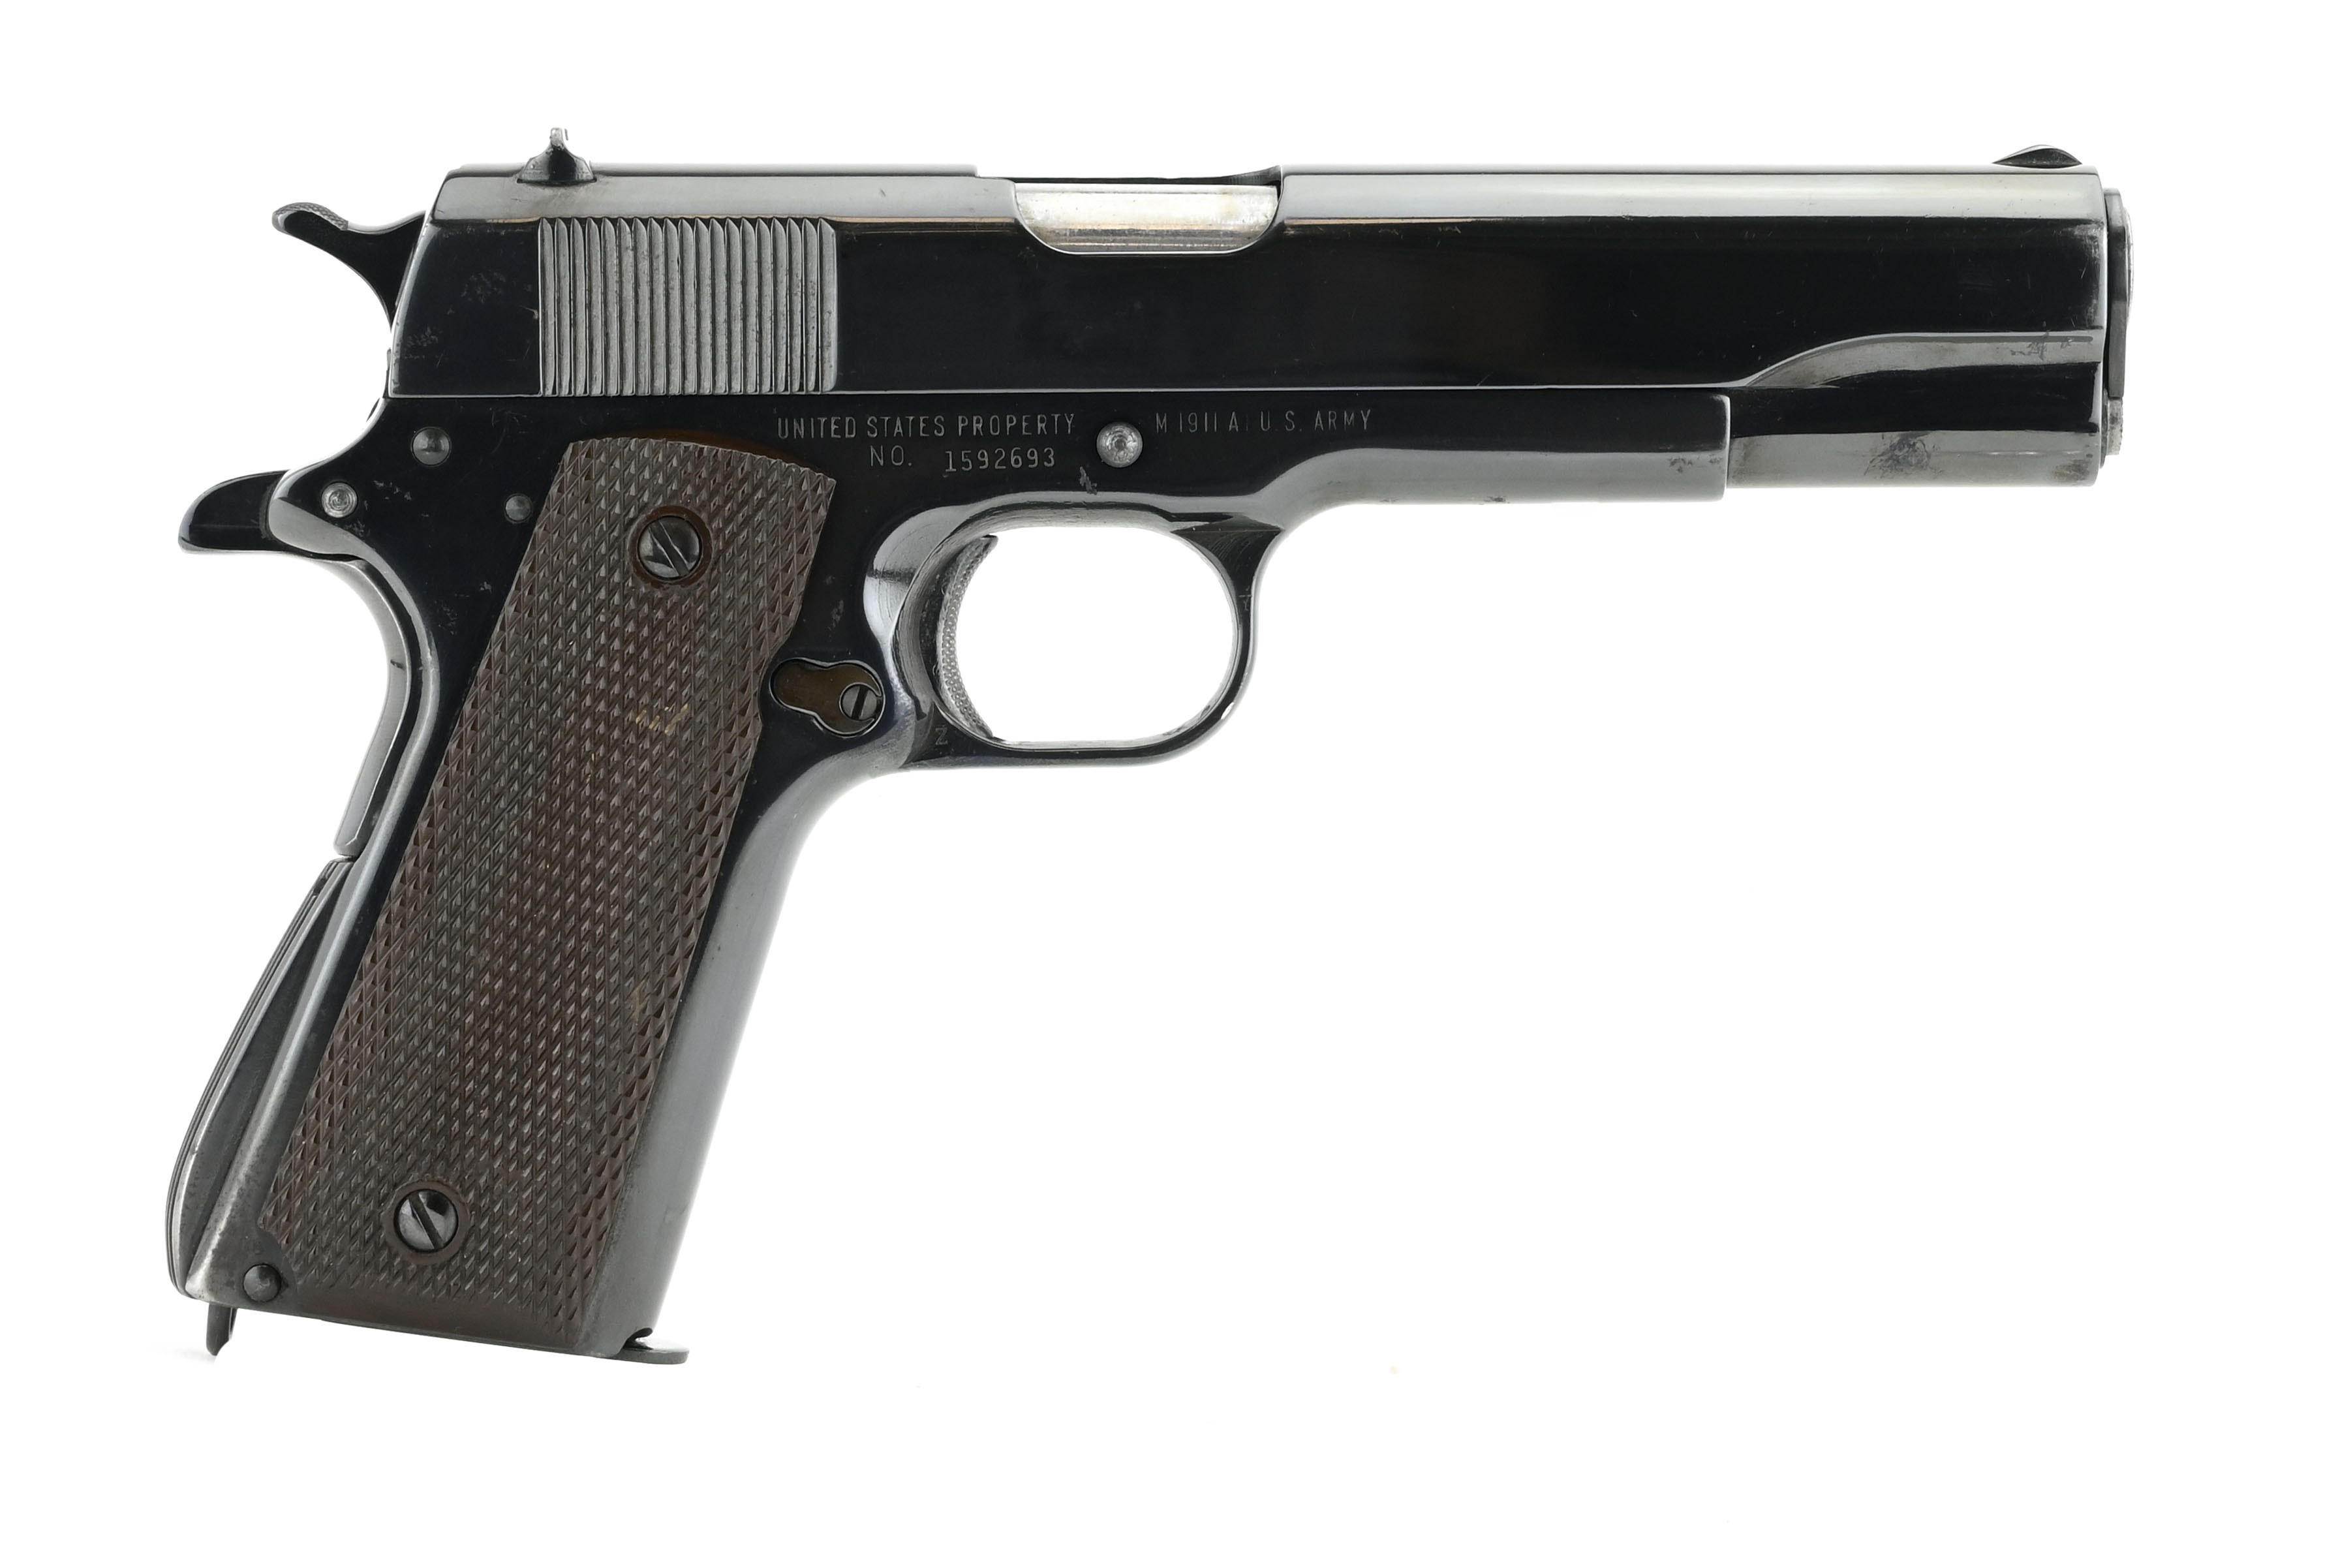 Remington M1911a1 45 Acp Caliber Pistol For Sale 4361